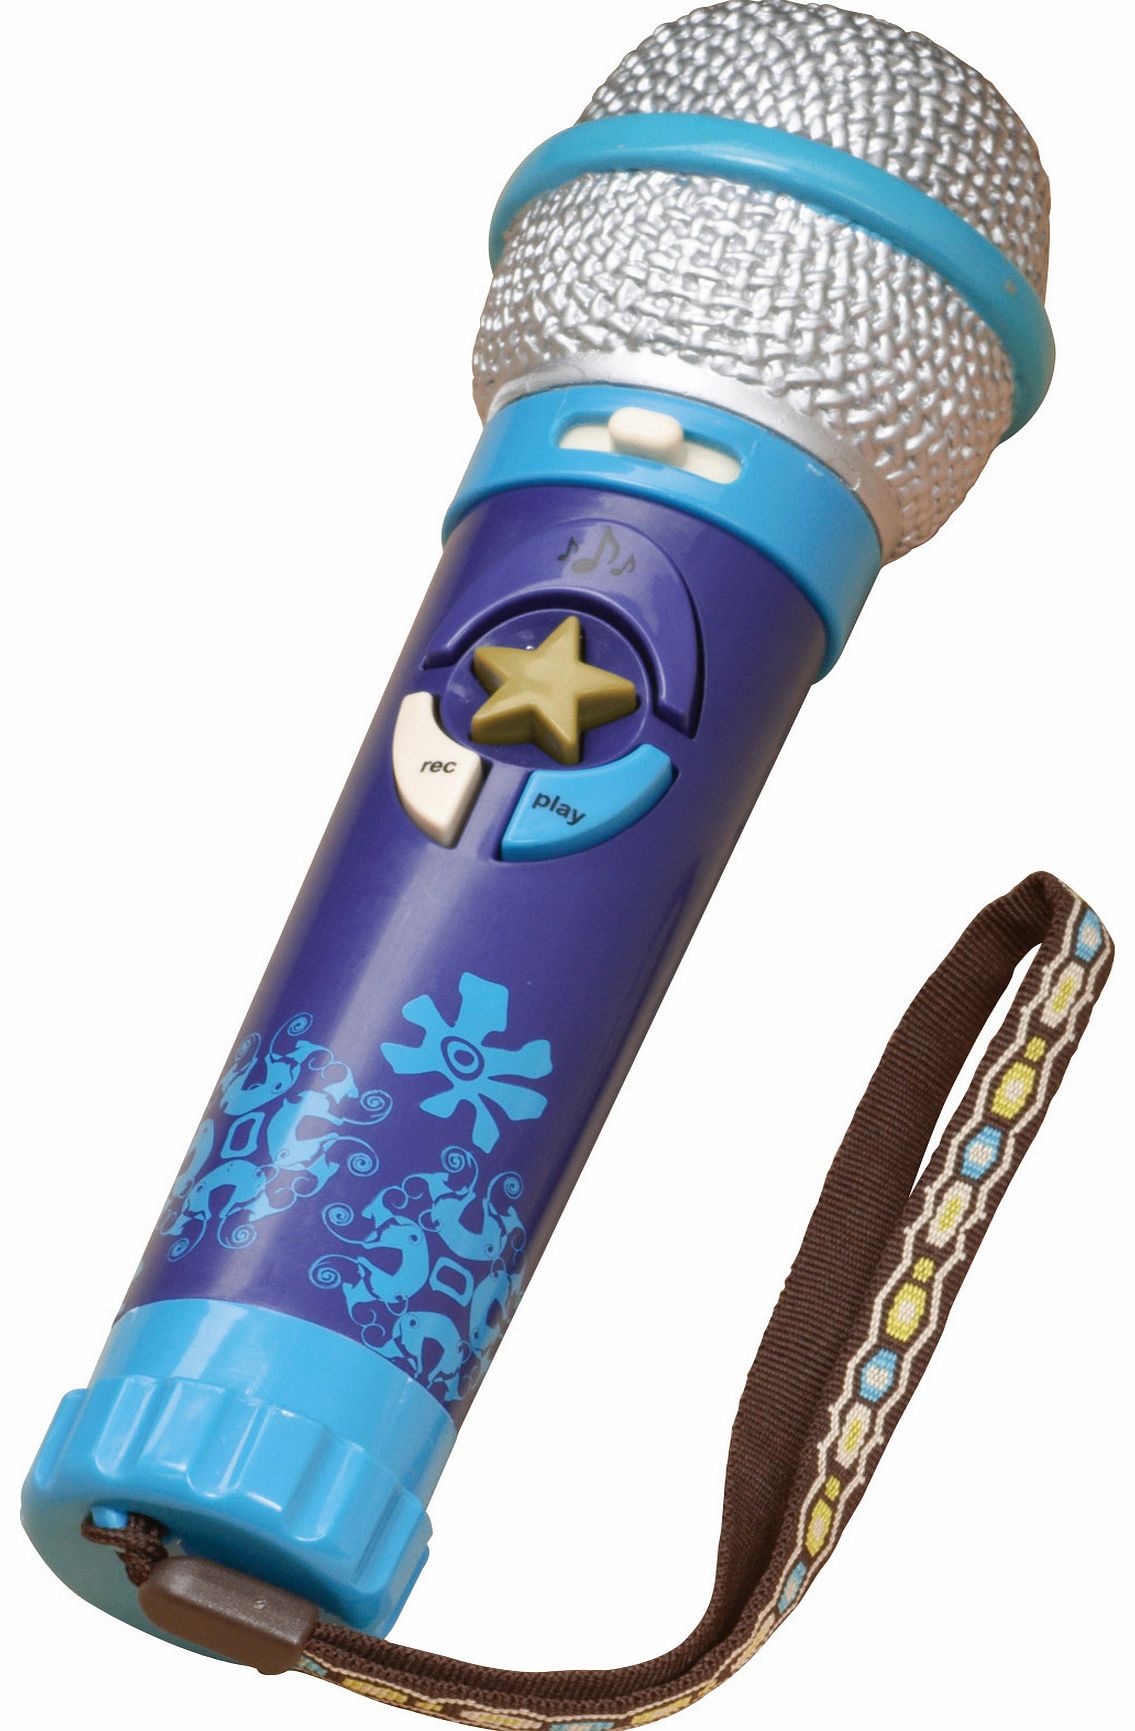 B Okeideoki Play Microphone